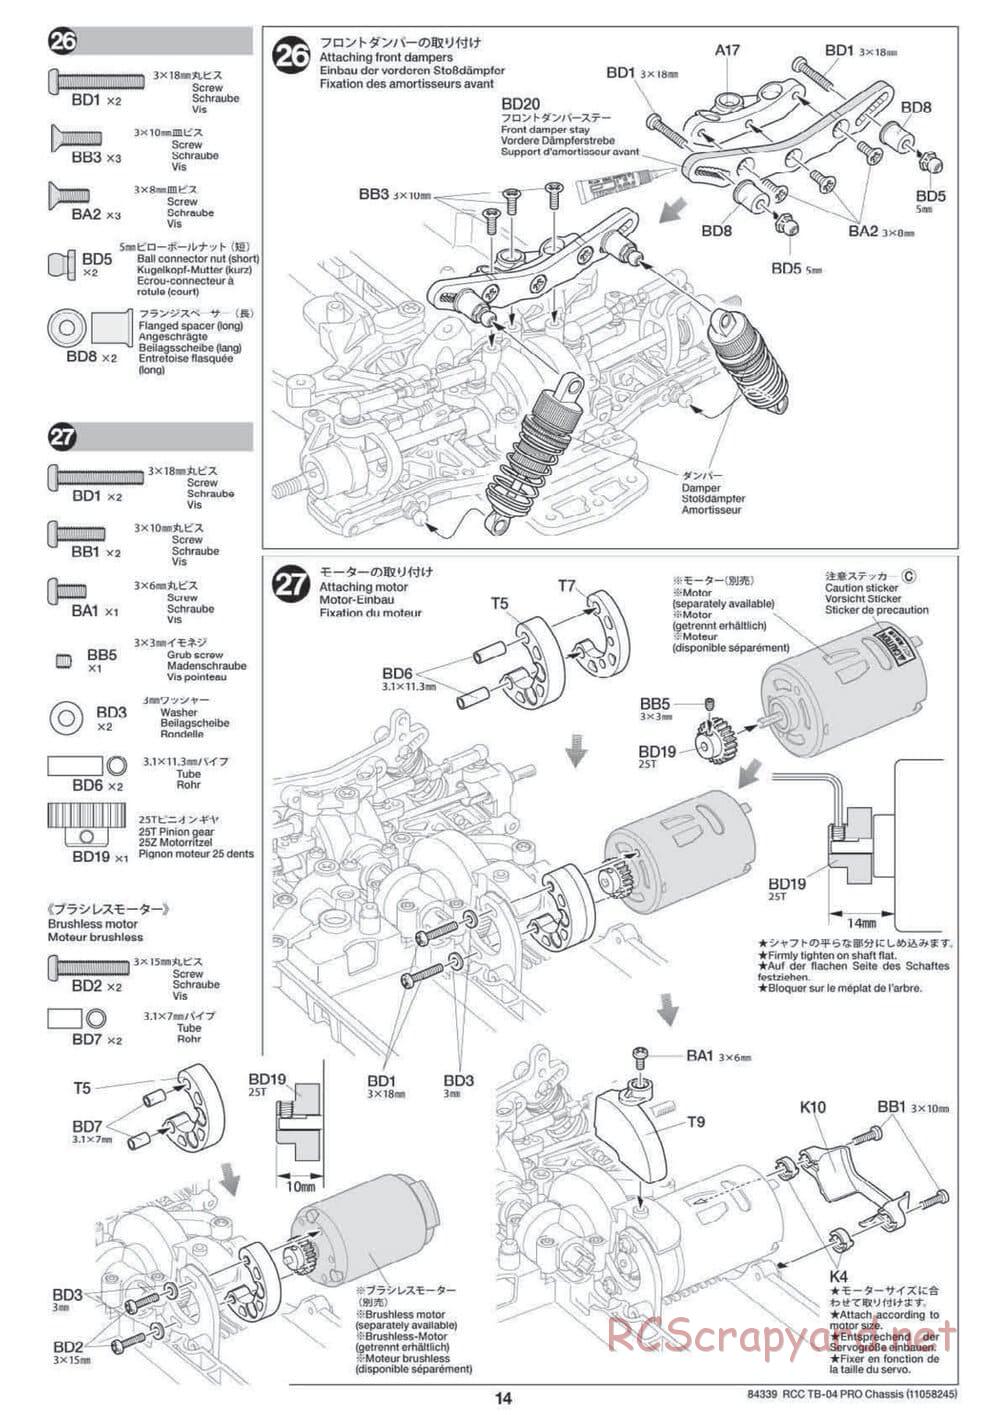 Tamiya - TB-04 Pro Chassis - Manual - Page 14